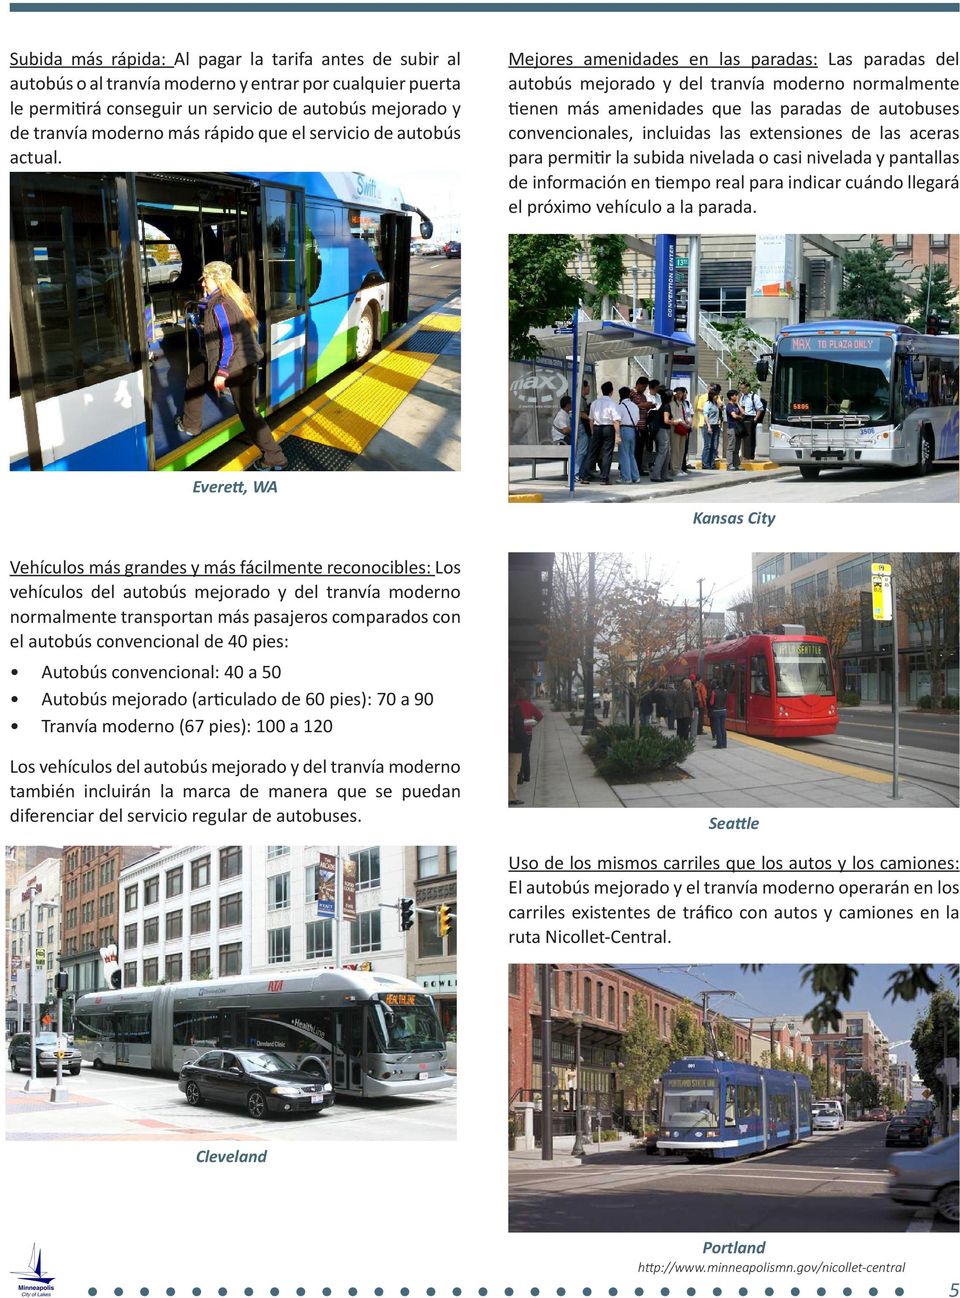 Mejores amenidades en las paradas: Las paradas del autobús mejorado y del tranvía moderno normalmente tienen más amenidades que las paradas de autobuses convencionales, incluidas las extensiones de